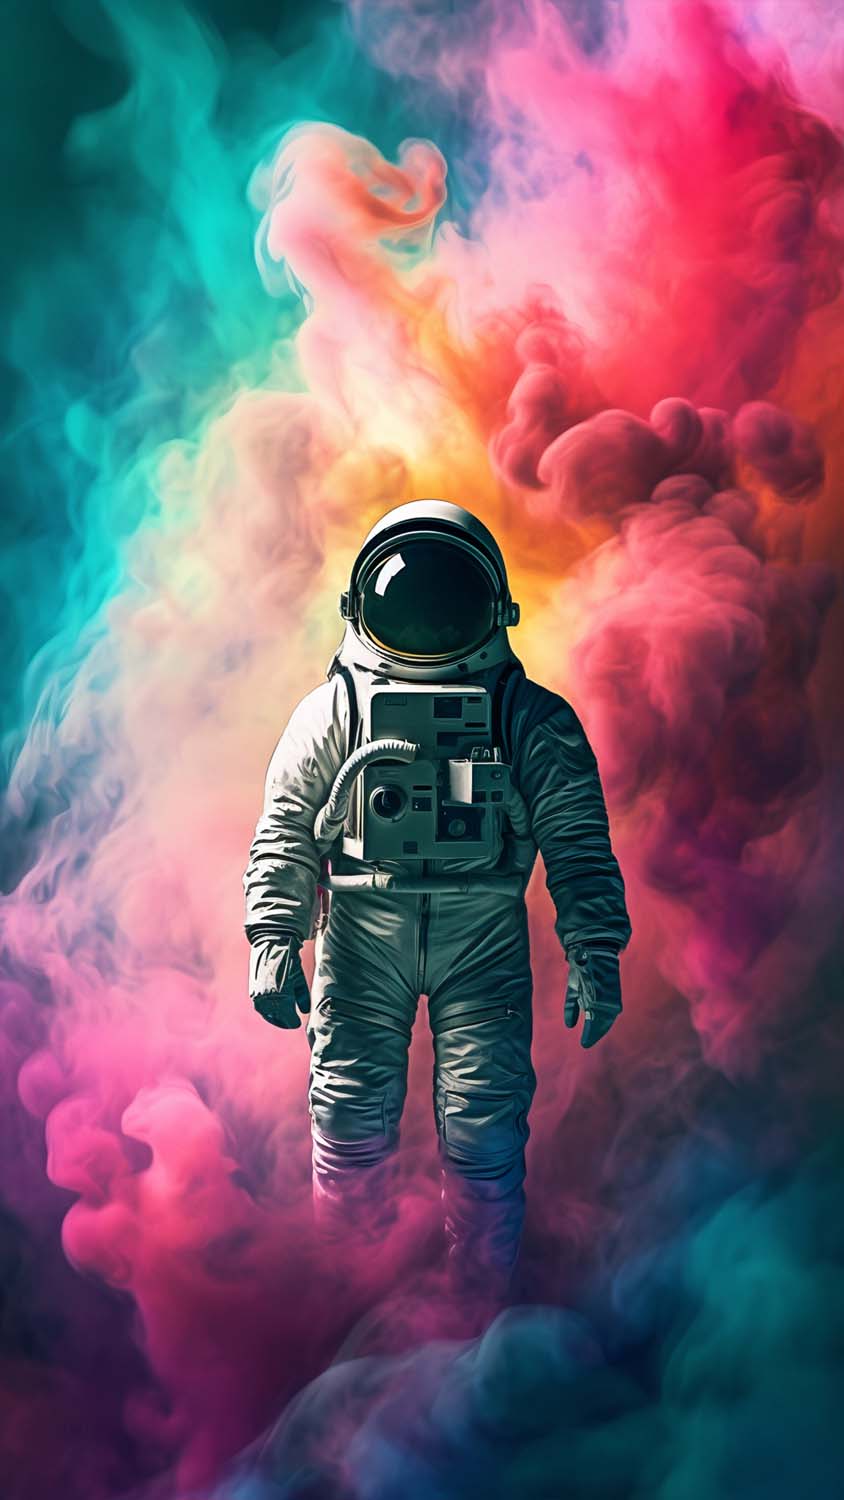 Astronaut Art iPhone Wallpaper 4K - iPhone Wallpapers